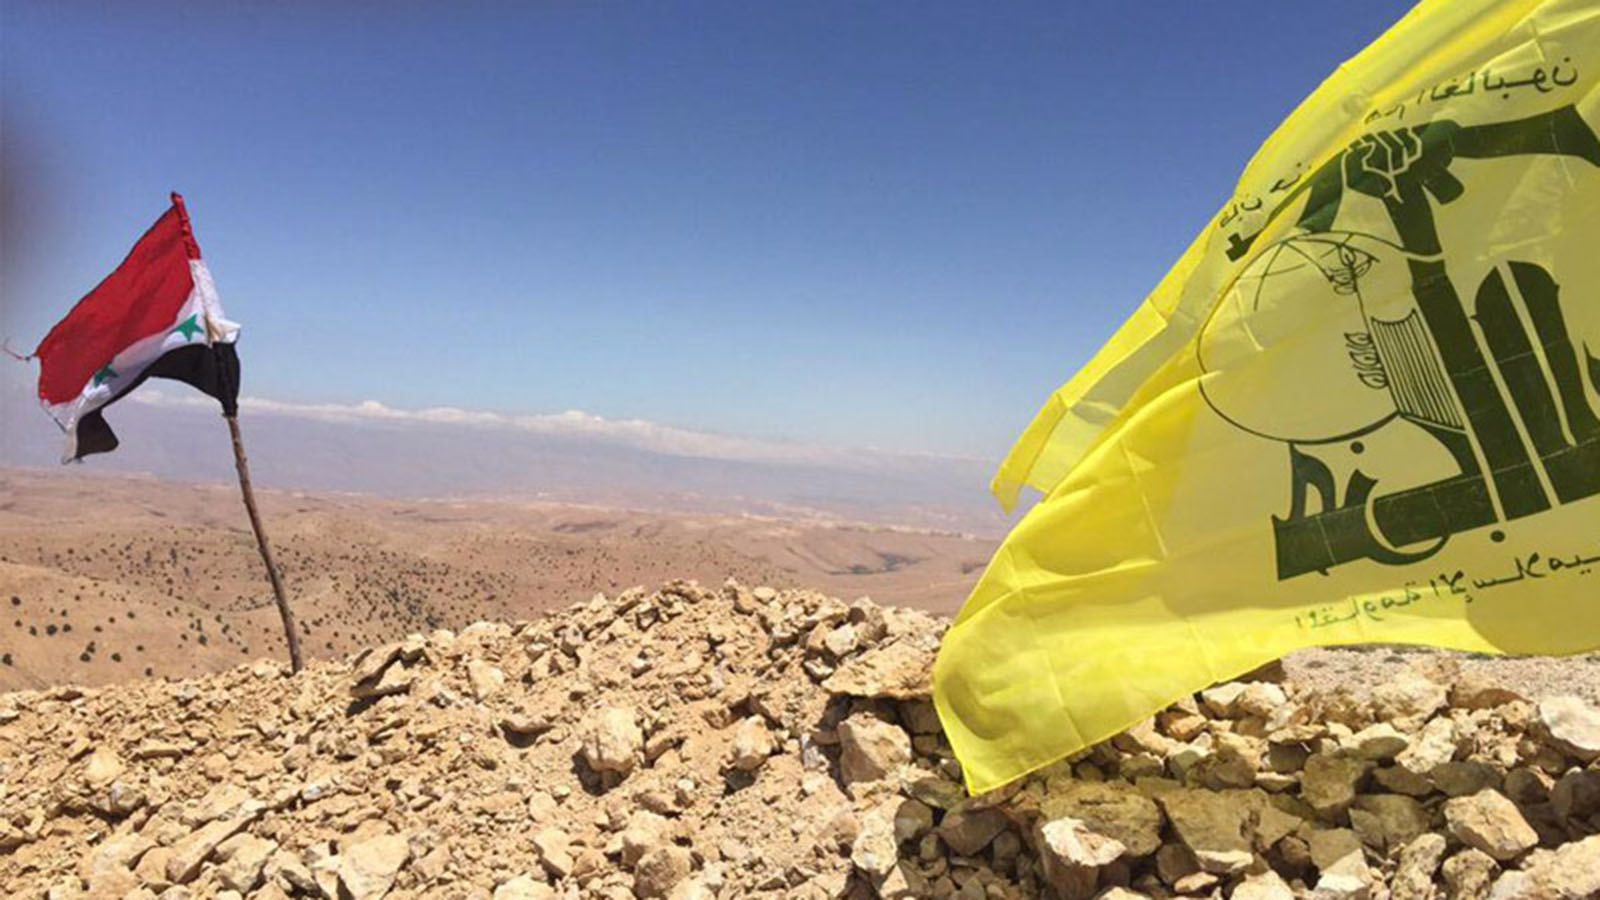 تهريب النازحين من لبنان إلى سوريا..برعاية "حزب الله"!